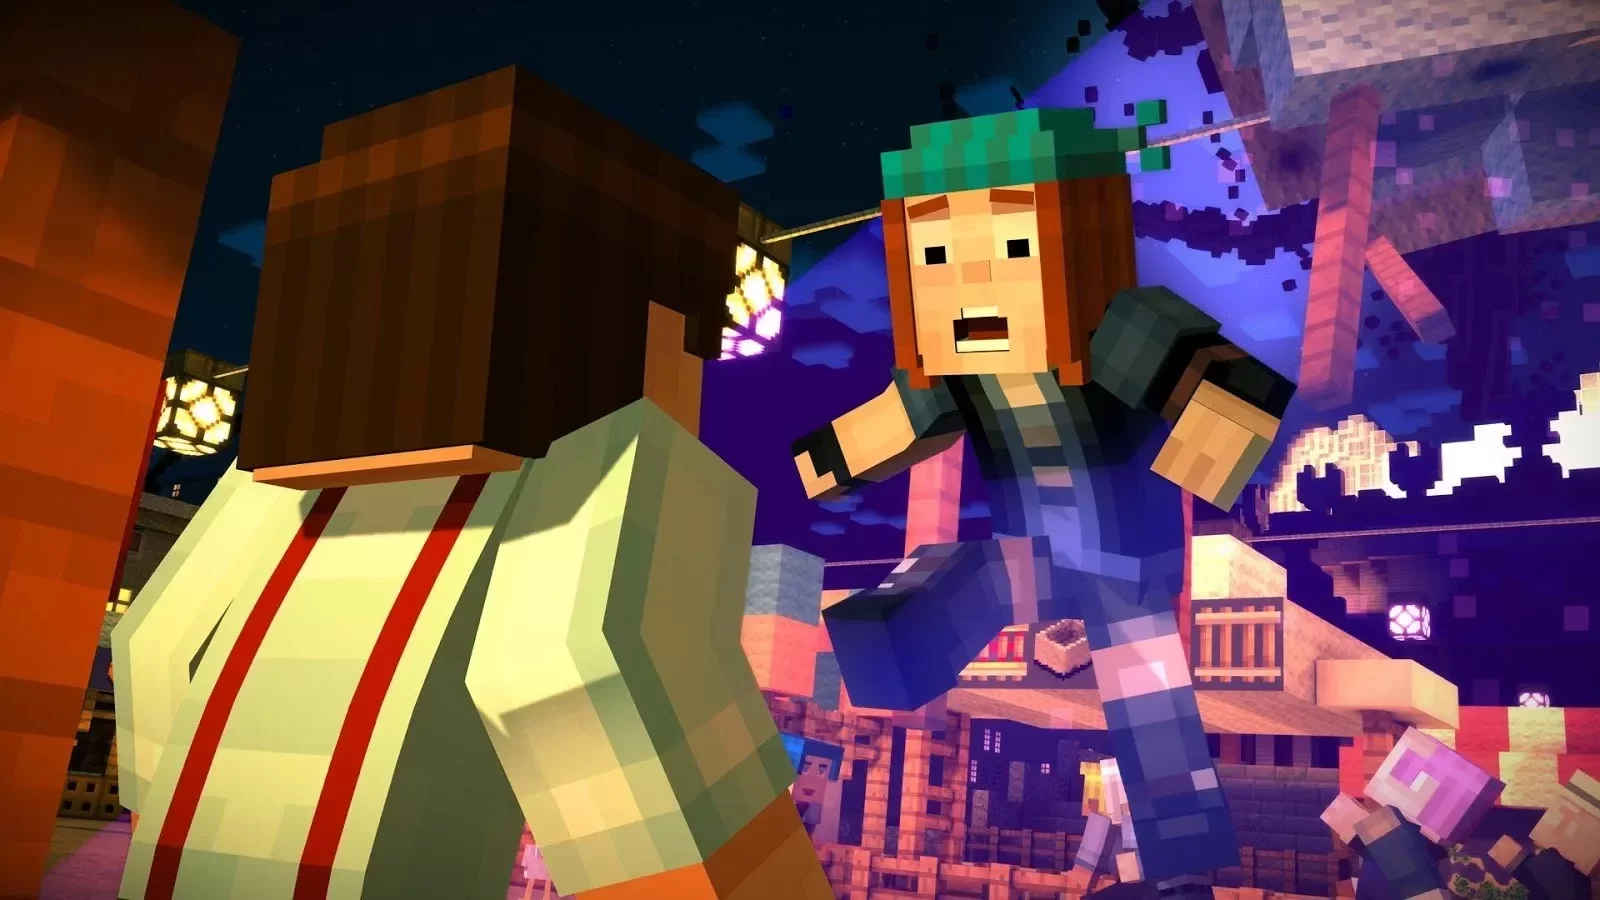 Assistir Minecraft: Story Mode - ver séries online